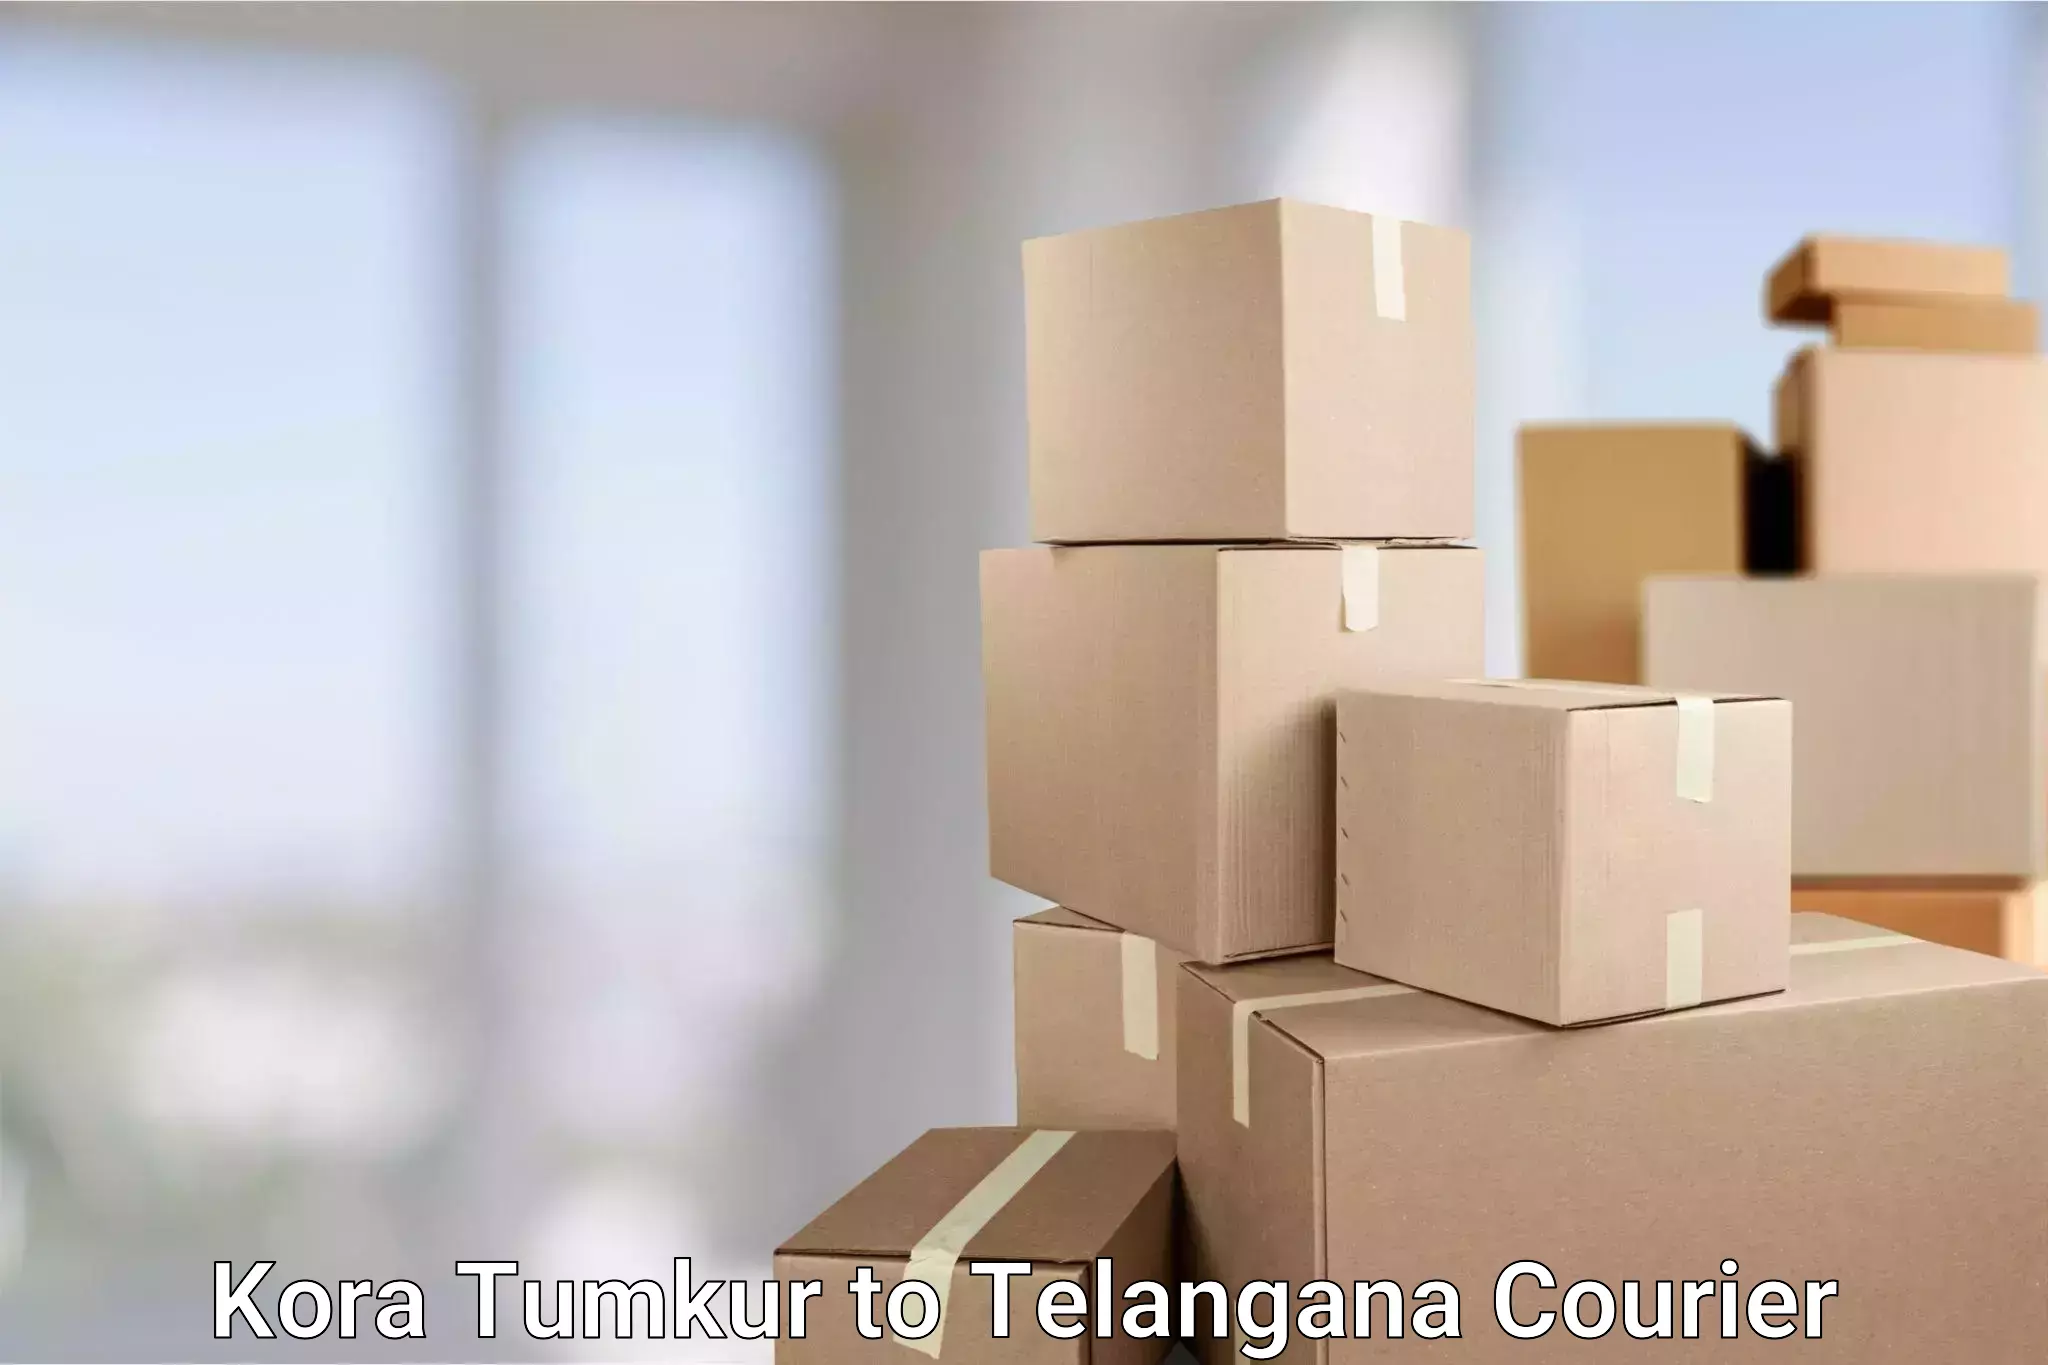 Flexible delivery schedules Kora Tumkur to Ramannapeta